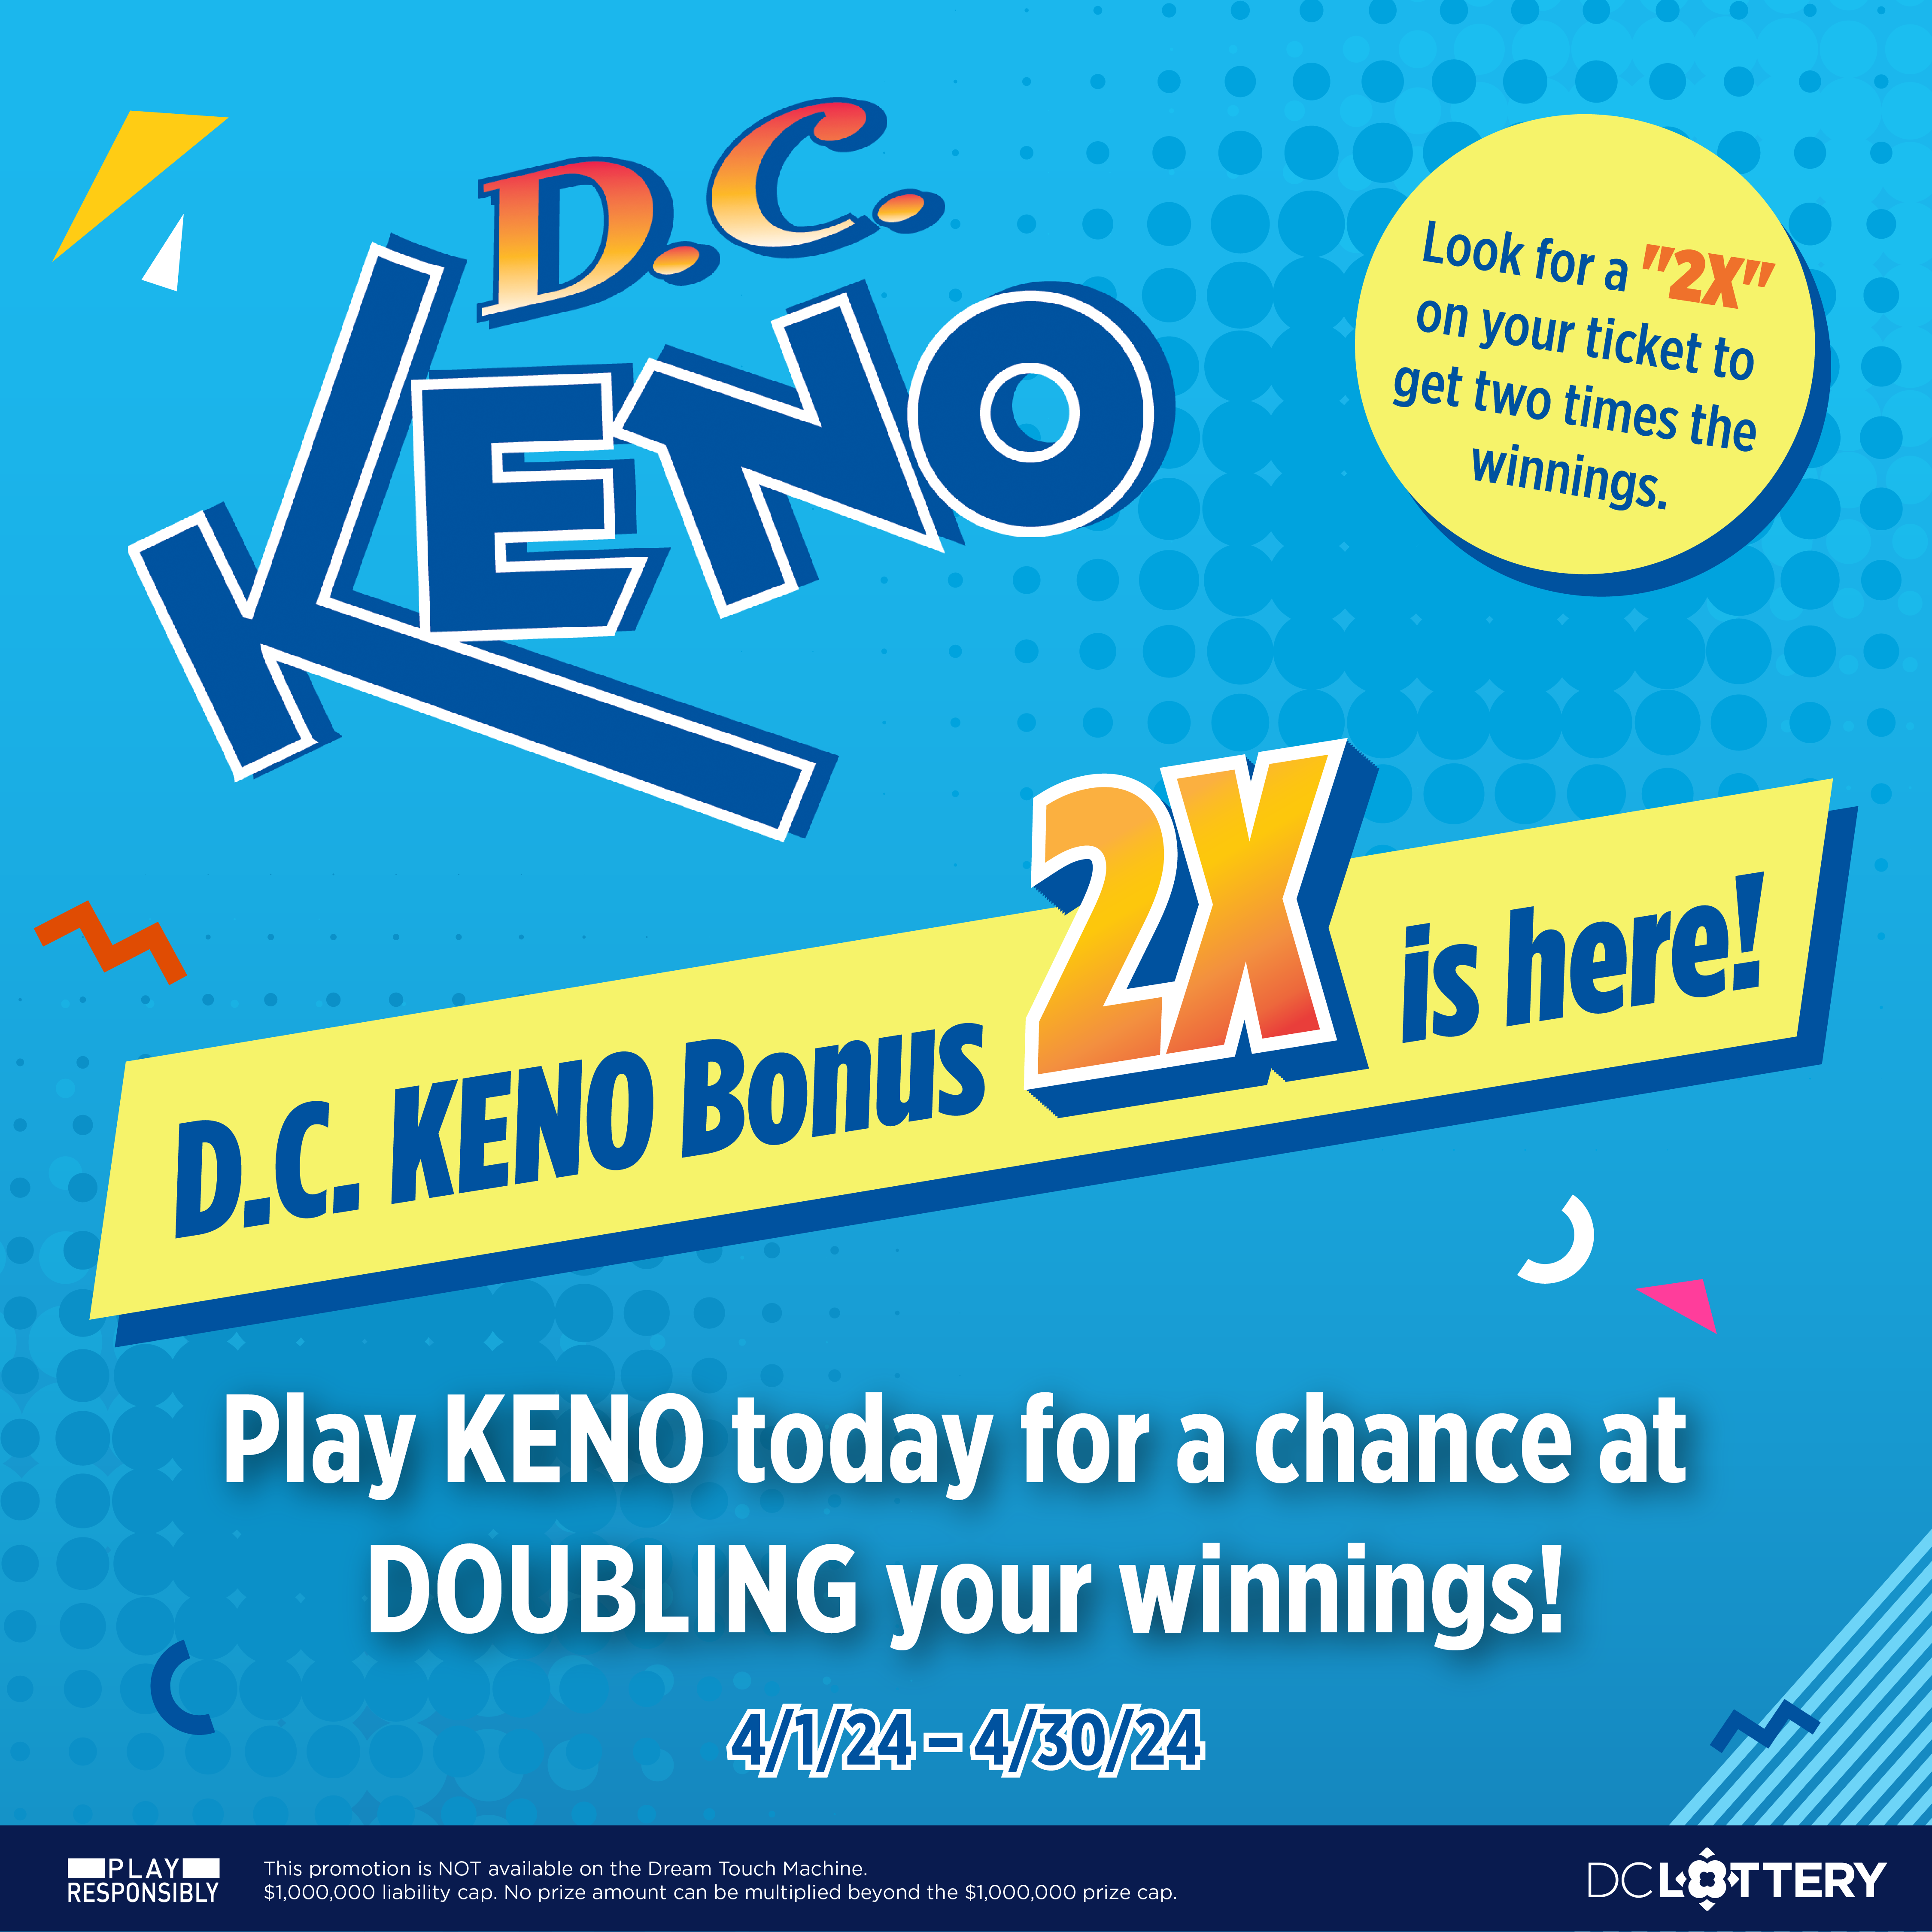 D.C. Keno Bonus 2X